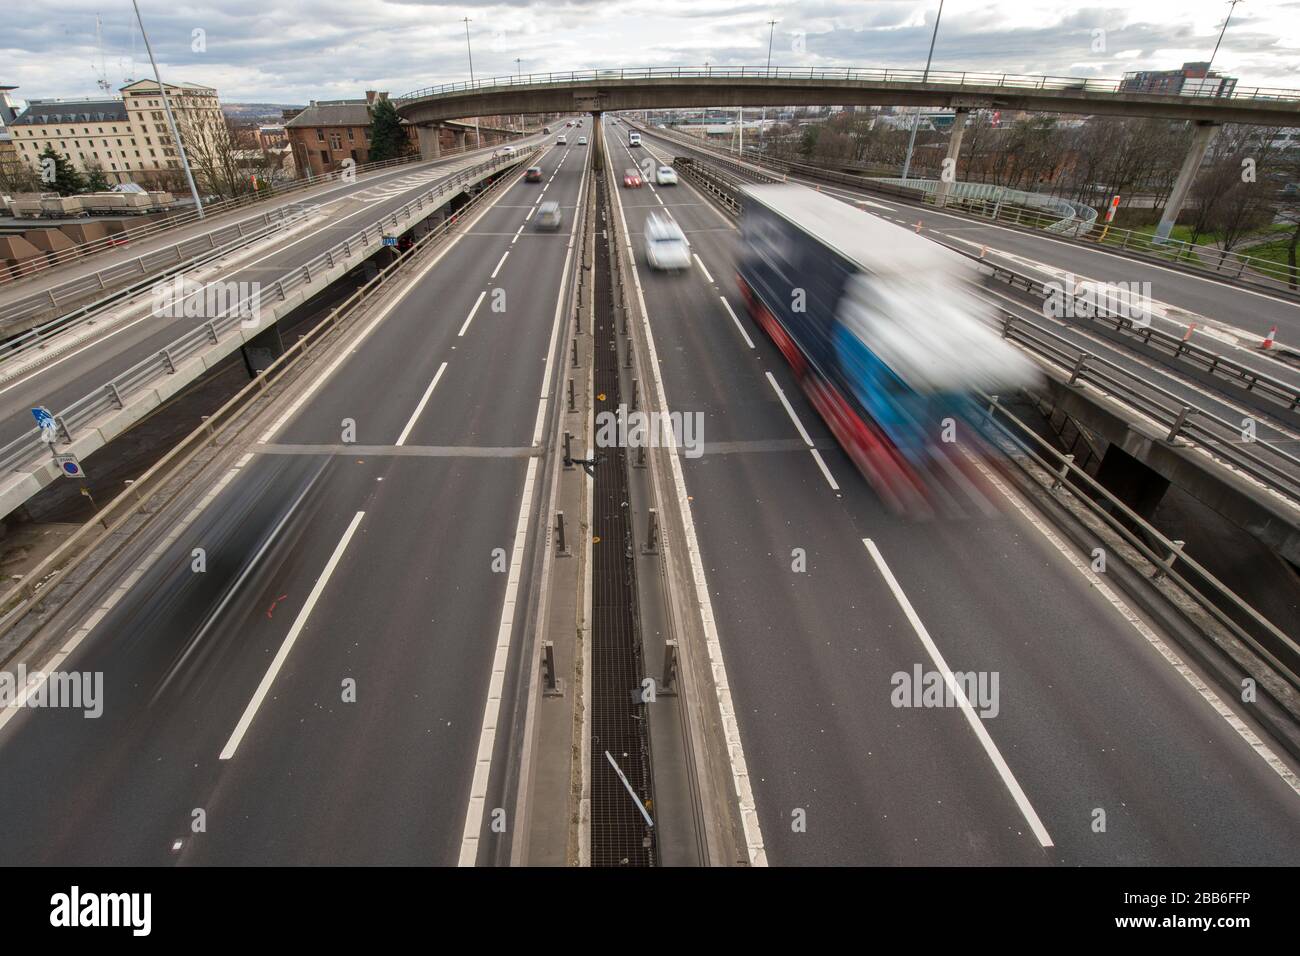 Glasgow, Royaume-Uni. 30 mars 2020. Photo: L'autoroute M 8 qui passe sur le pont de Kingston, le pont d'affaires écossais, est vu avec la lumière libre et la circulation libre qui serait normalement bloqué dans un embouteillage. Le pont de Kingston gère normalement 150 000 véhicules par jour dans le cadre d'opérations normales, mais en raison du verrouillage imposté par le gouvernement britannique, le nombre de véhicules a considérablement diminué. Crédit : Colin Fisher/Alay Live News Banque D'Images